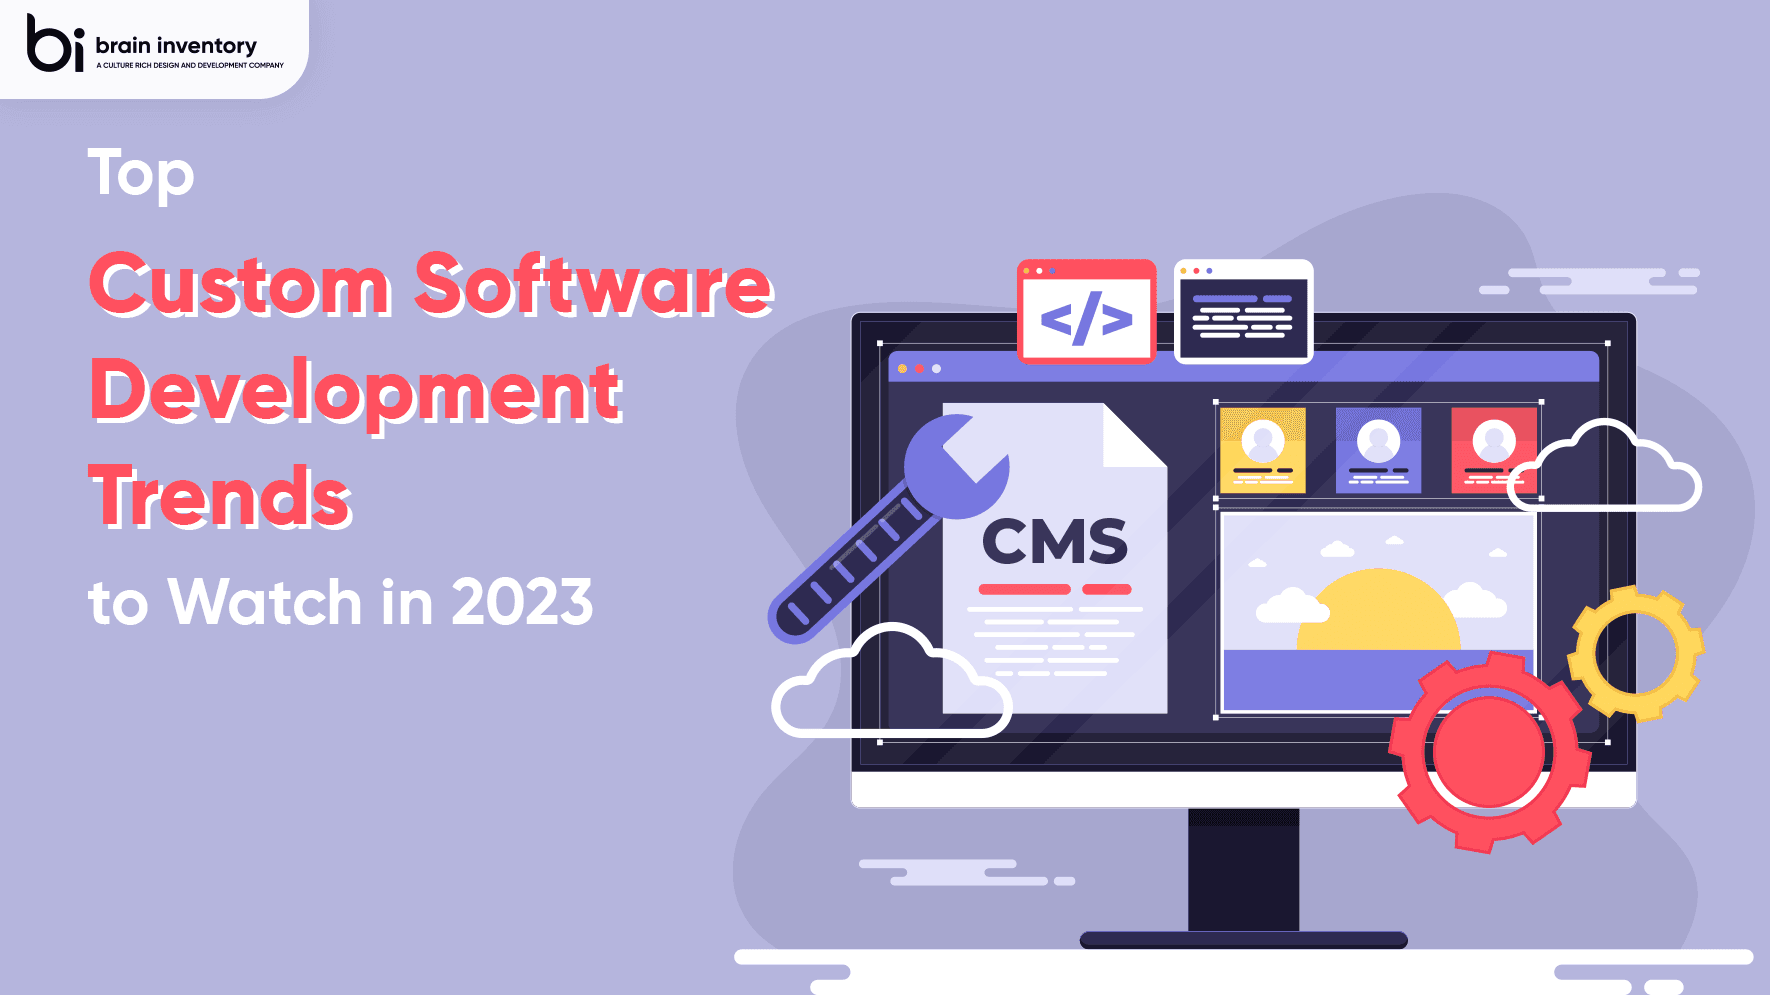 Top Custom Software Development Trends to Watch in 2023